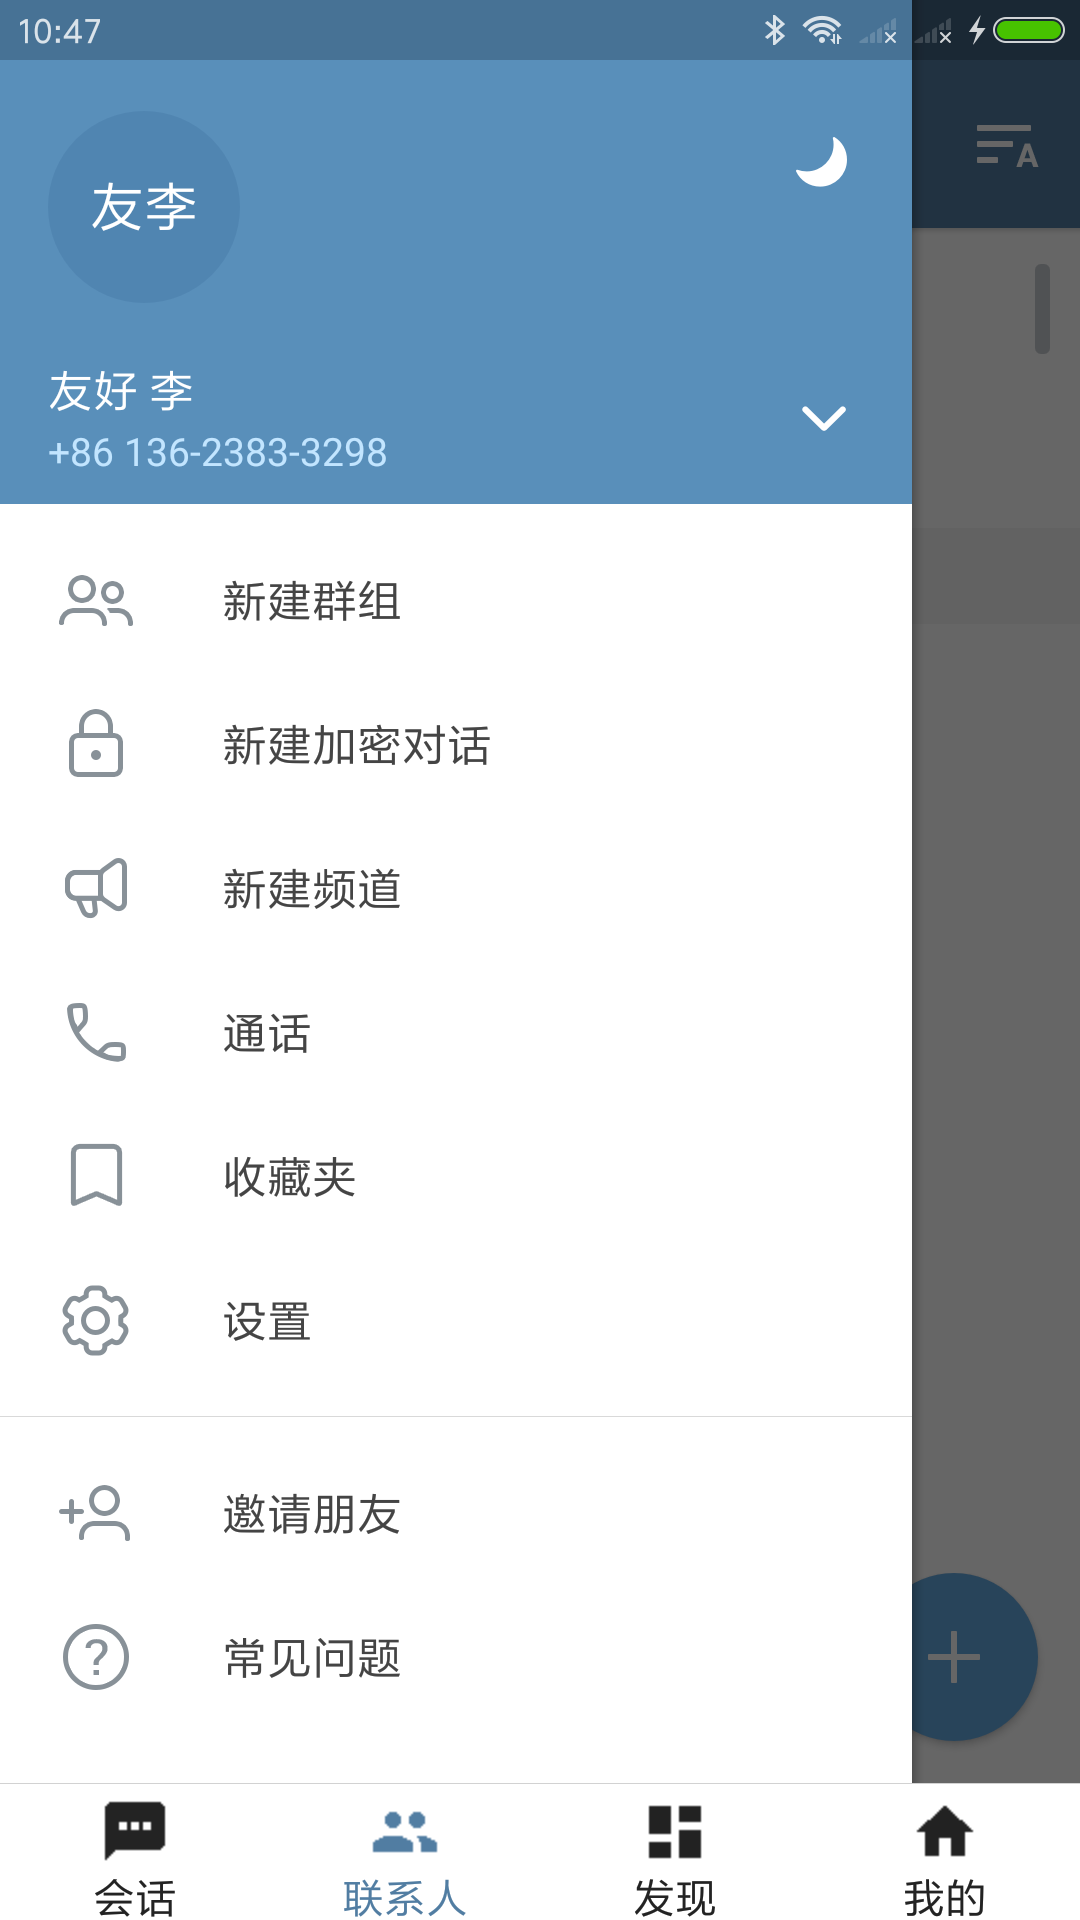 telegreat中文-telegreat中文版苹果设置